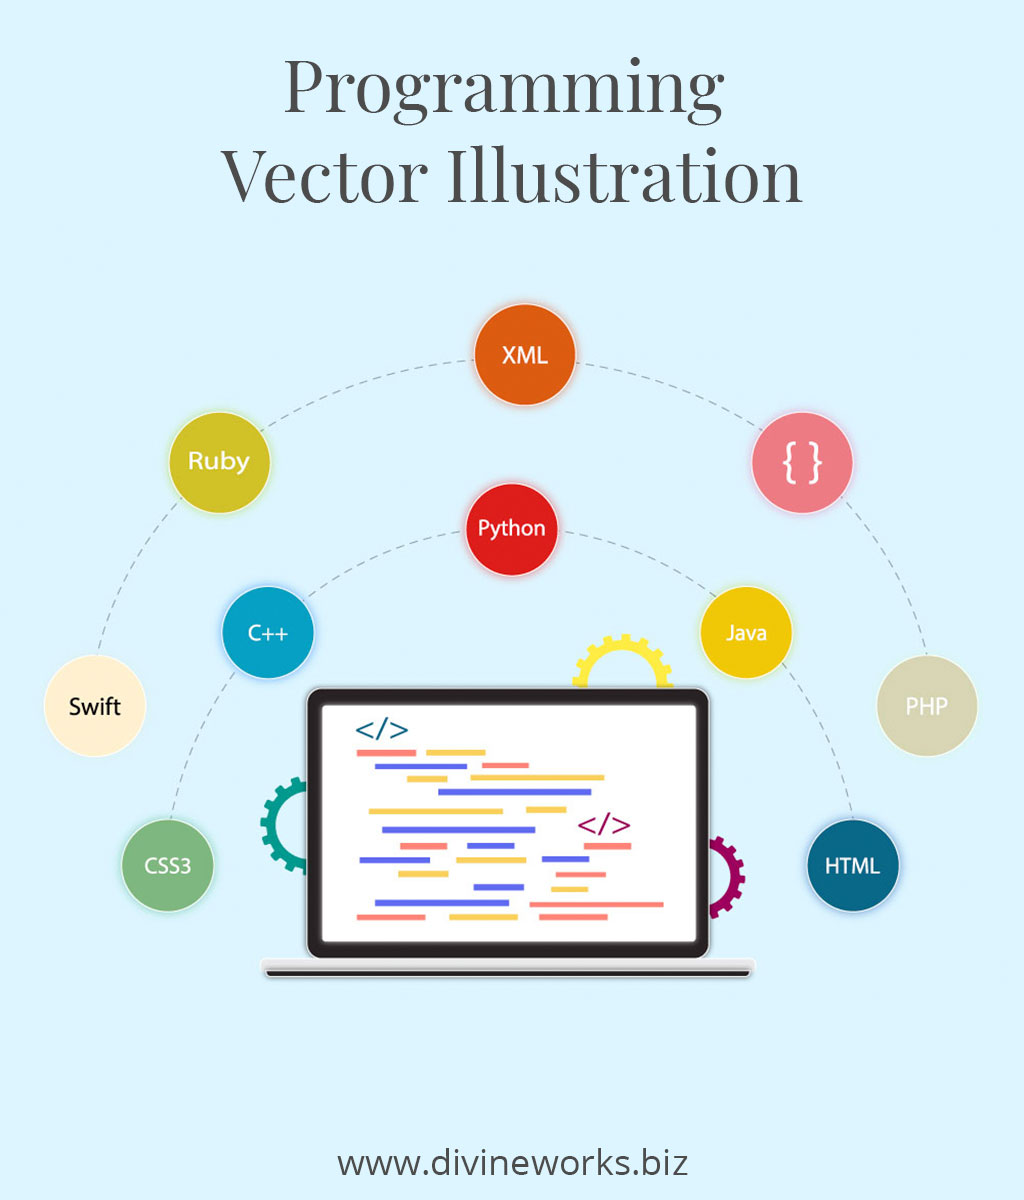 Programming Vector Illustration